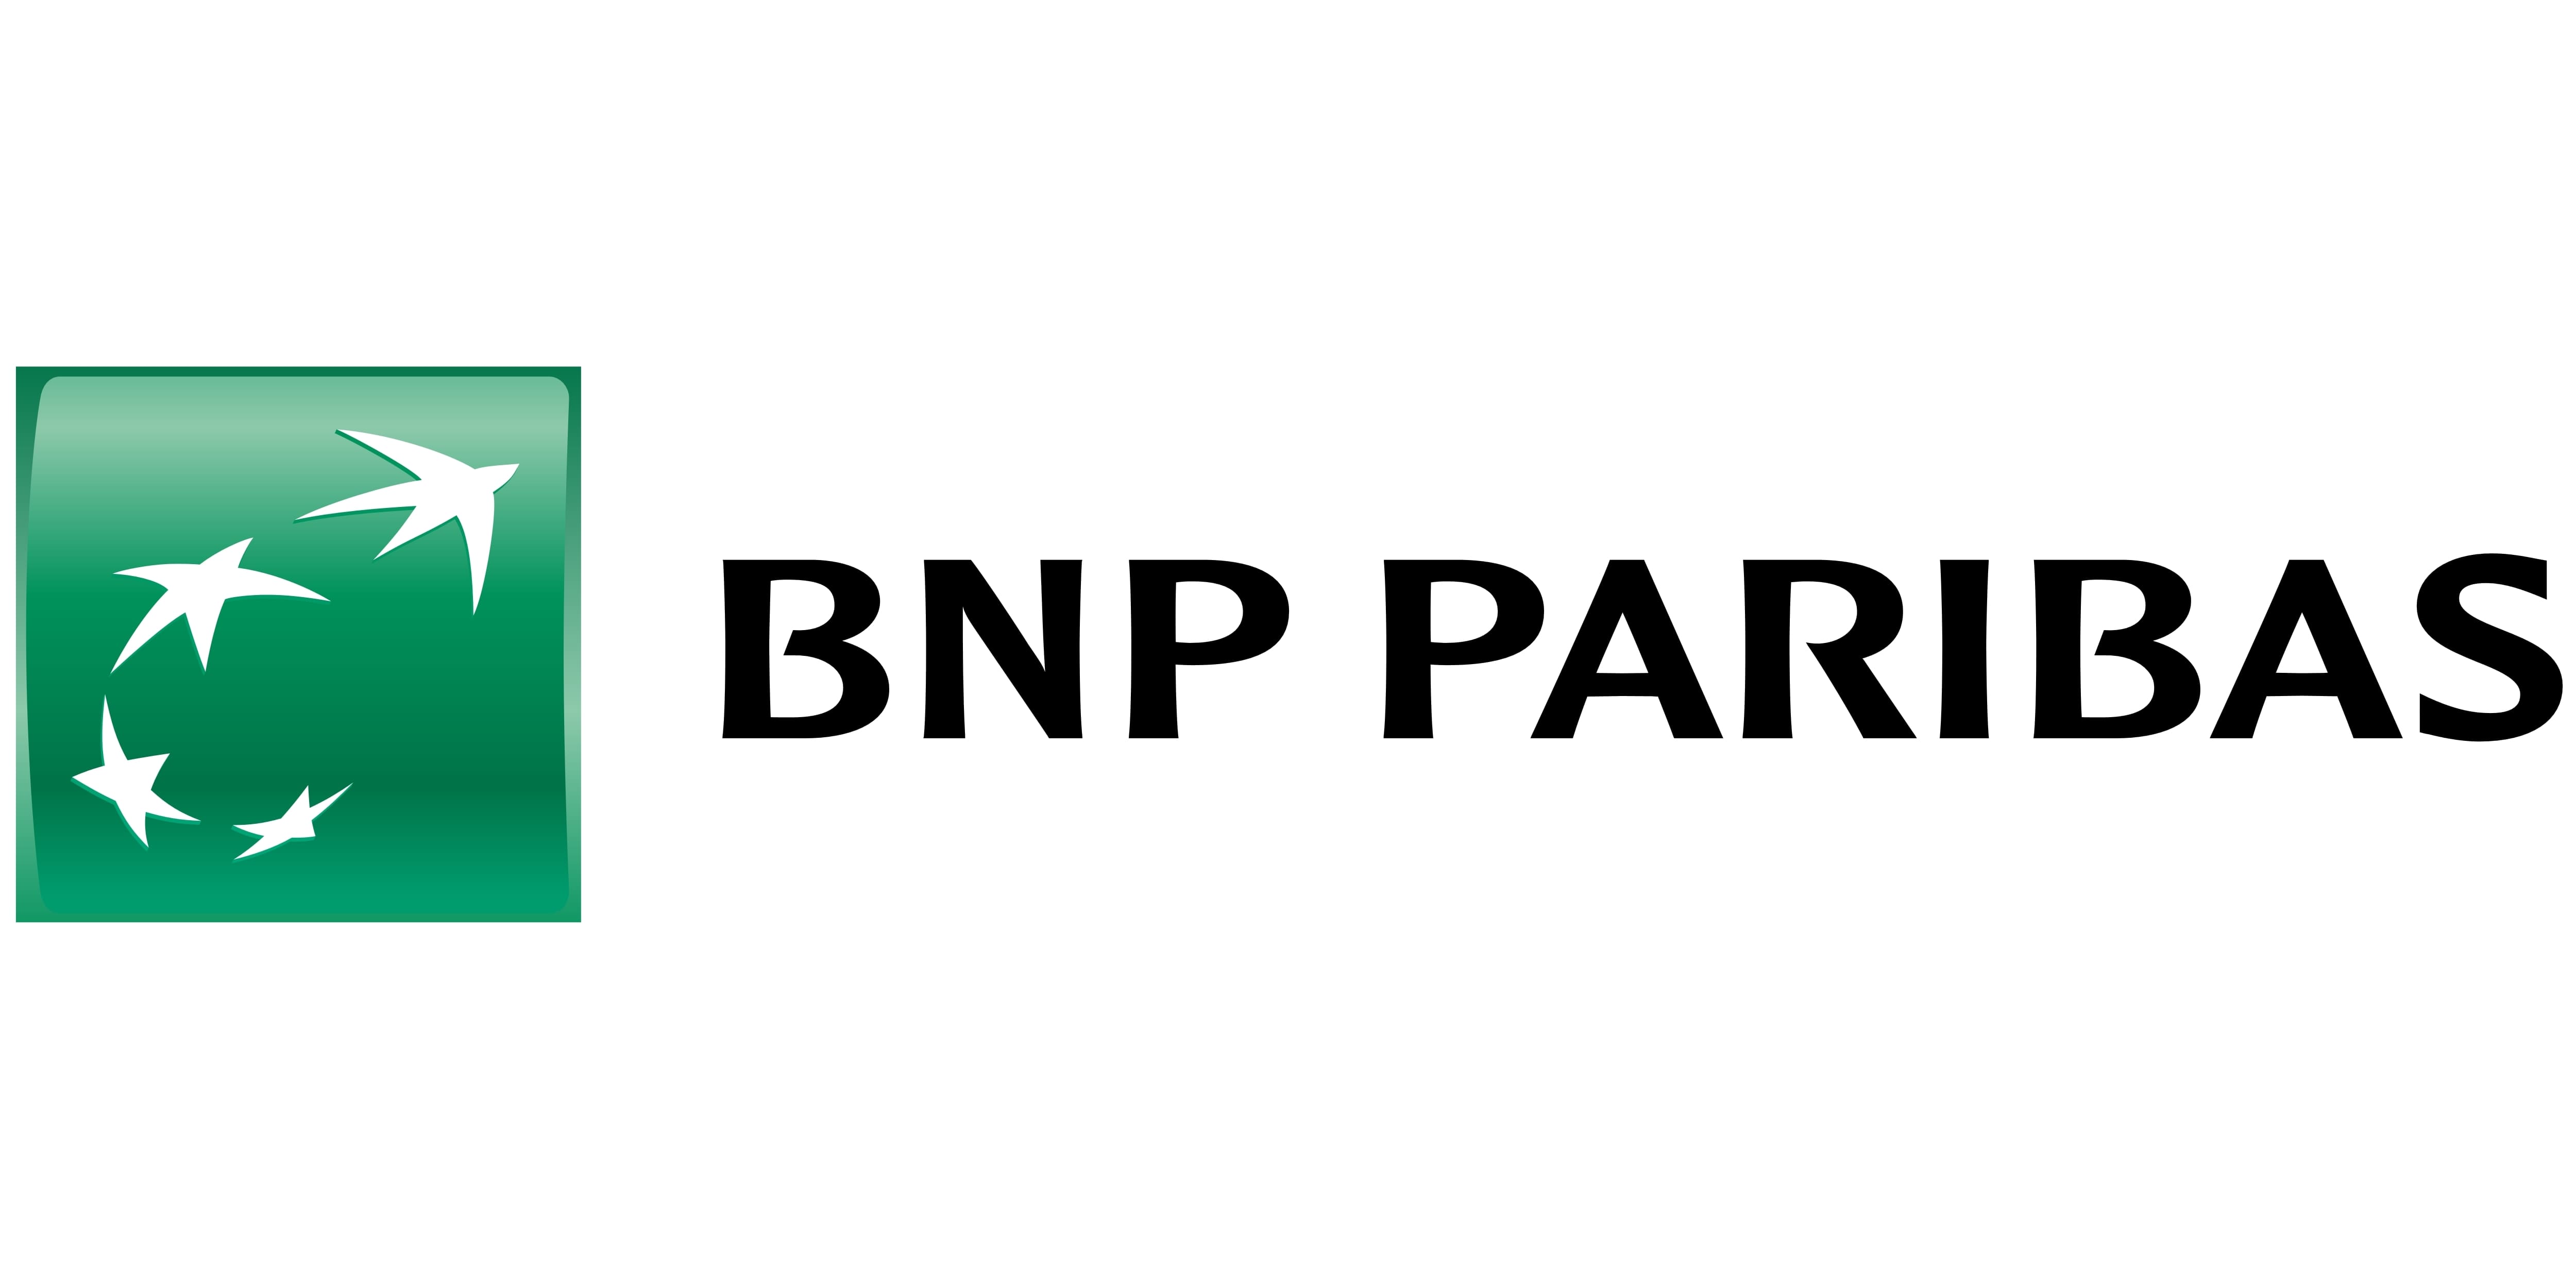 entreprise partenaire E2C 92 -BNP Paribas